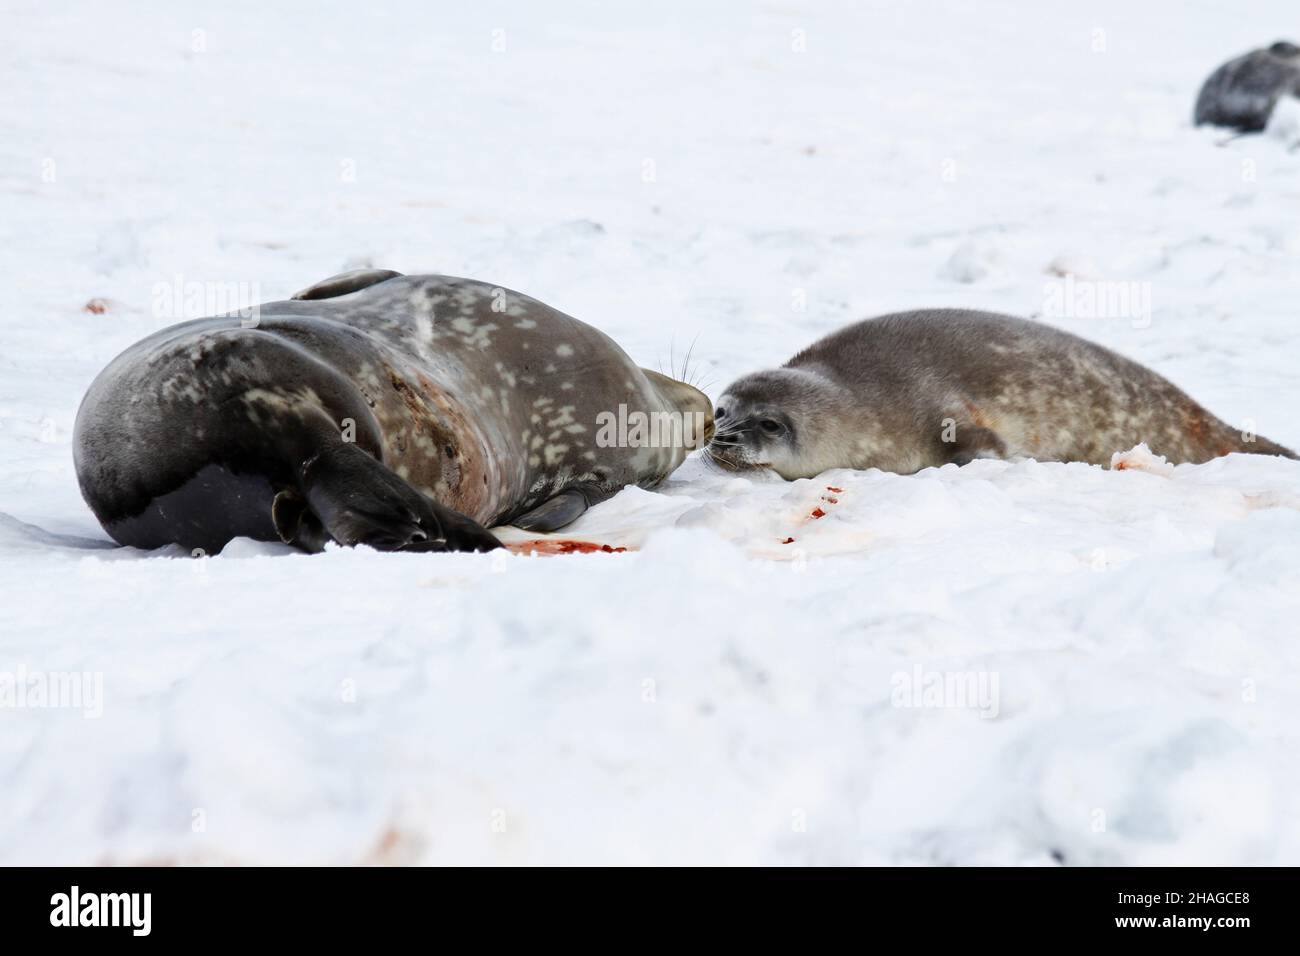 Phoques de Weddell (Leptonychotes weddellii).Mère et pup allongé sur la glace de mer.Les phoques de Weddell sont nés seuls.Ils ont des cheveux fins doux (lanugo) qui tourne Banque D'Images